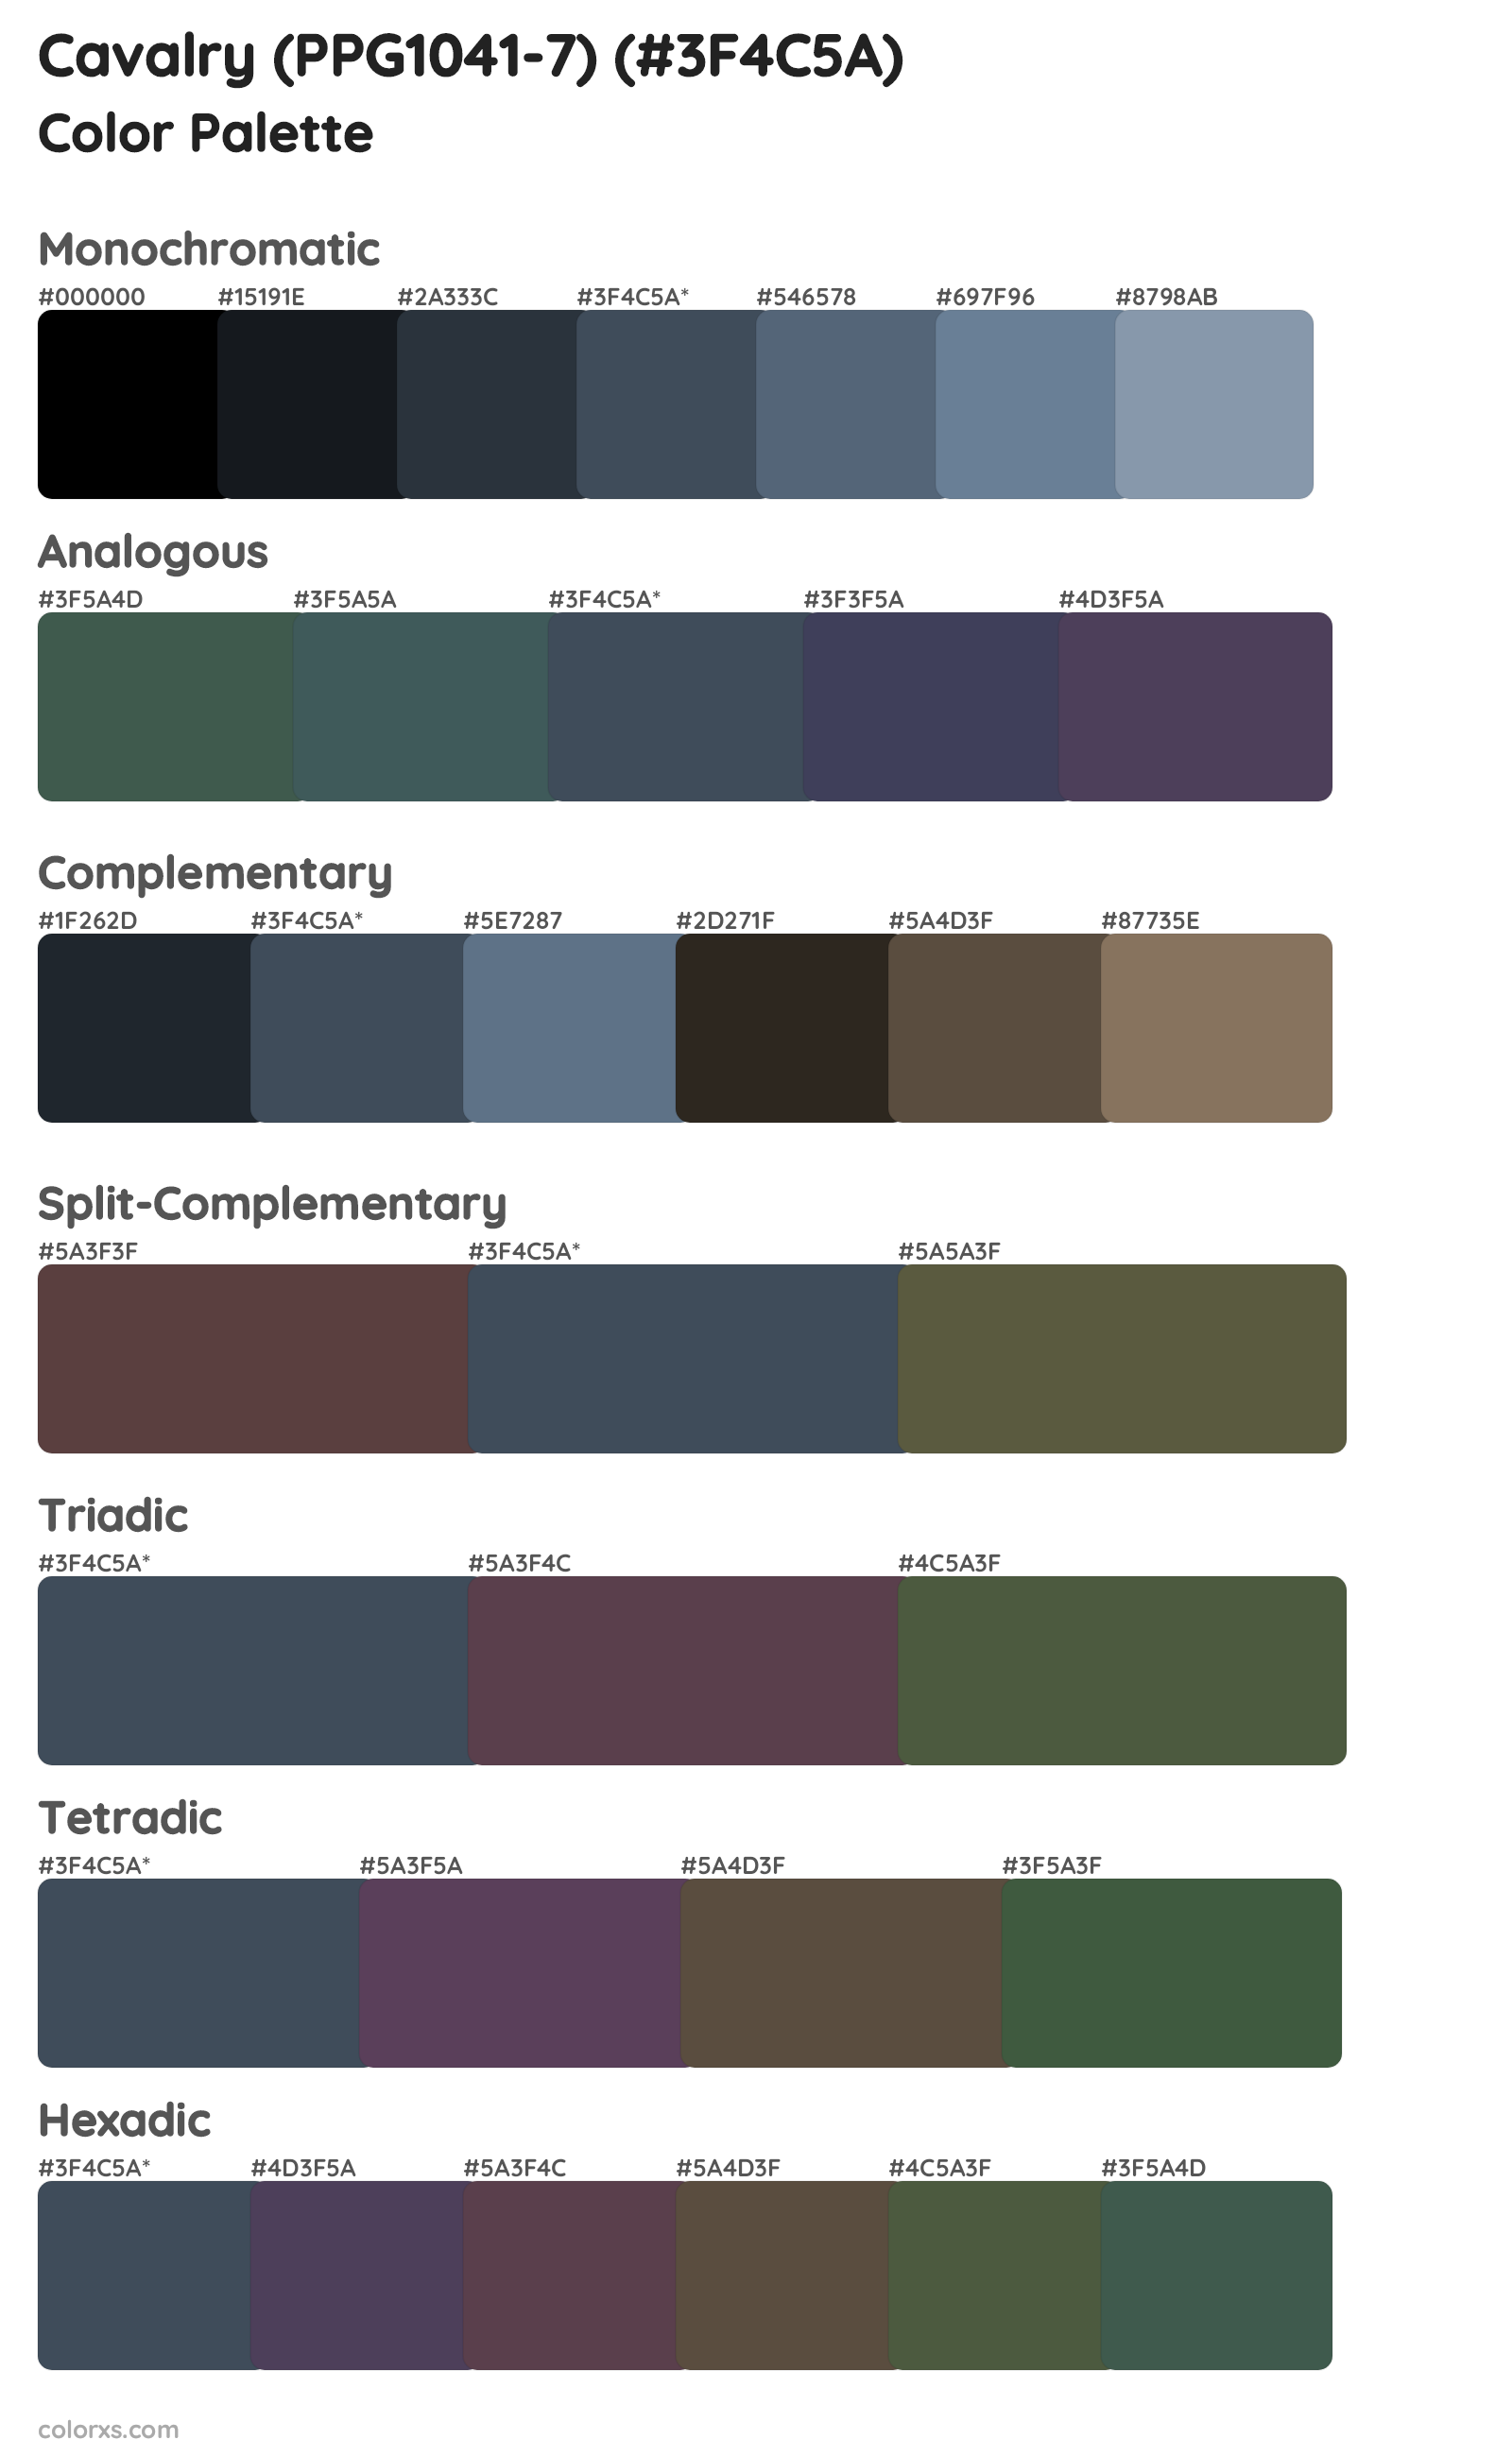 Cavalry (PPG1041-7) Color Scheme Palettes